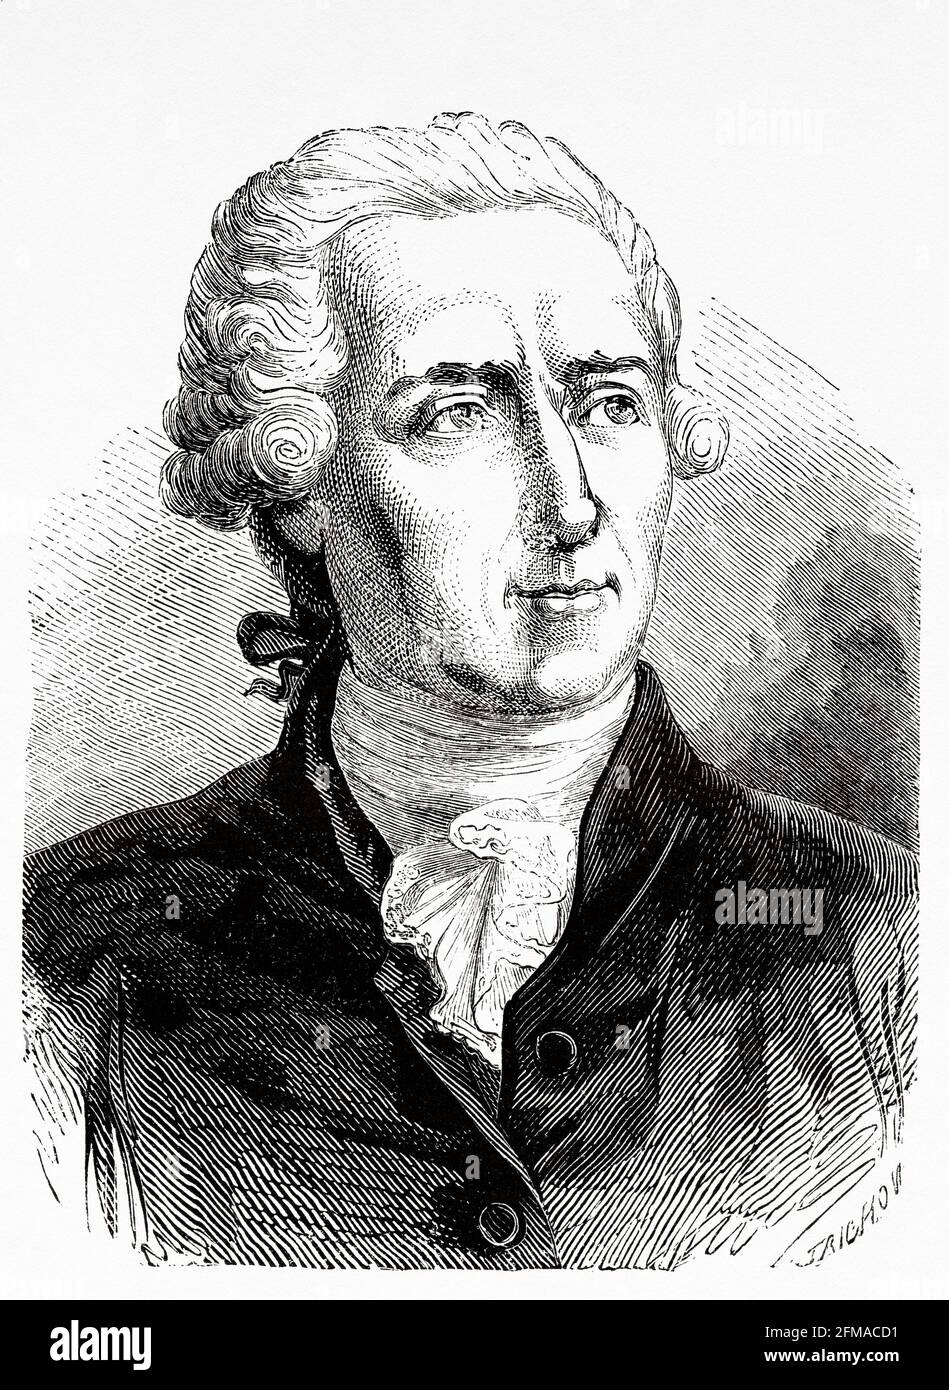 Retrato de Antoine Lavoisier. Antoine-Laurent de Lavoisier (1743-1794) fue  un noble y químico francés que fue central en la revolución química del  siglo 18th y que tuvo una gran influencia tanto en